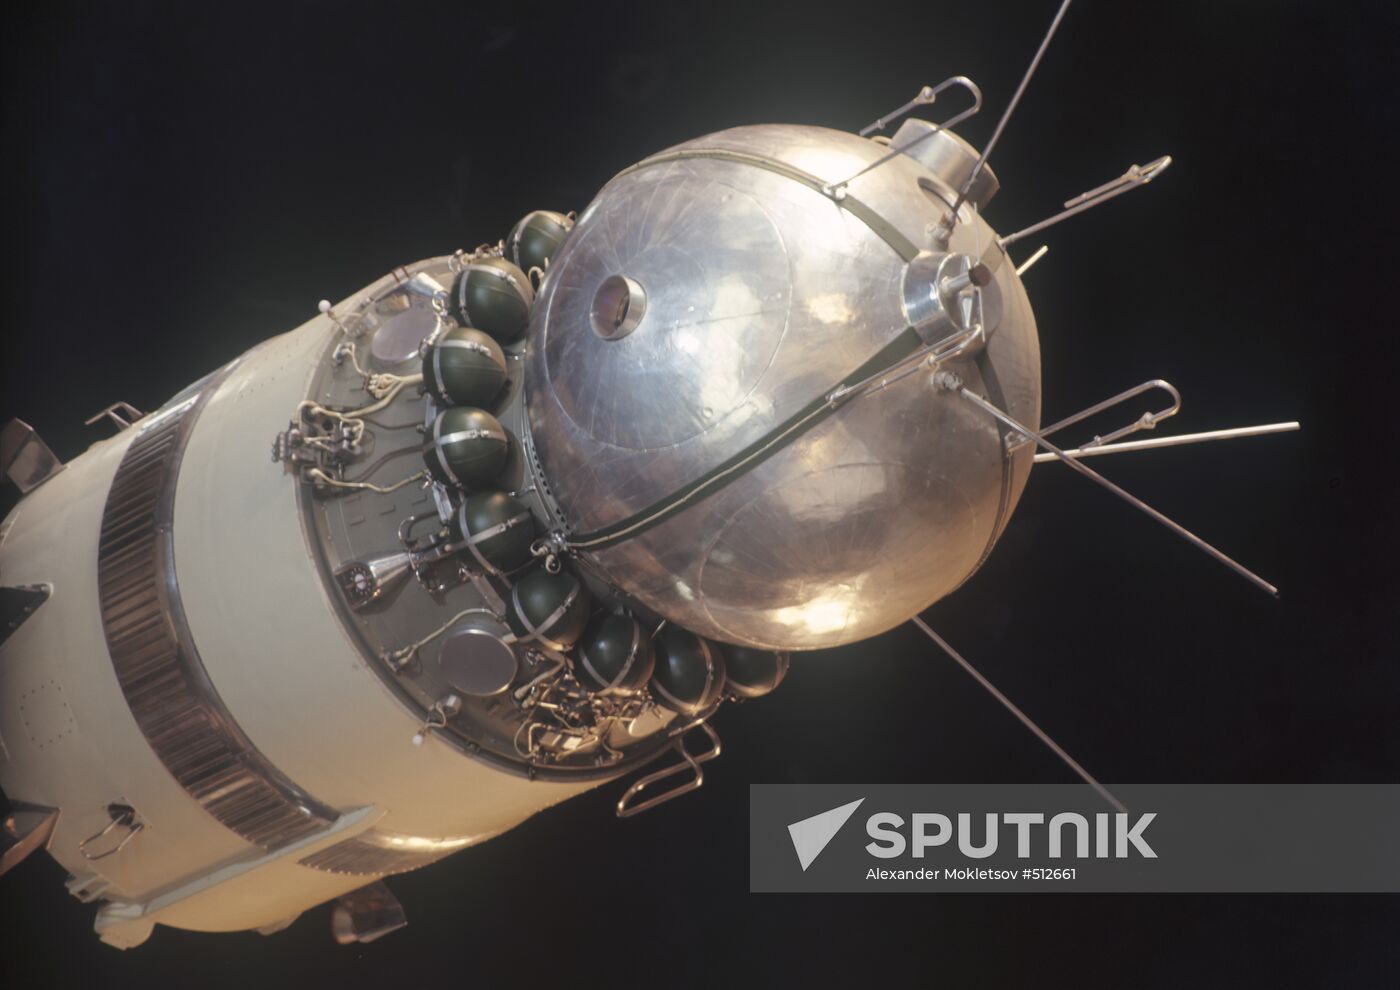 Vostok spacecraft